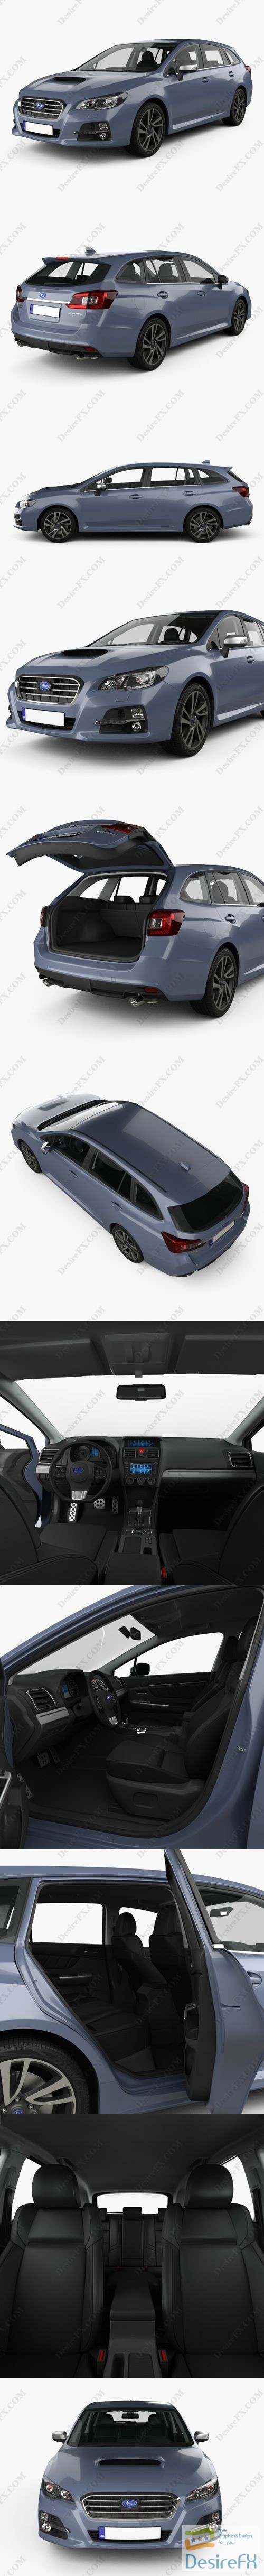 Subaru Levorg with HQ interior 2015 3D Model